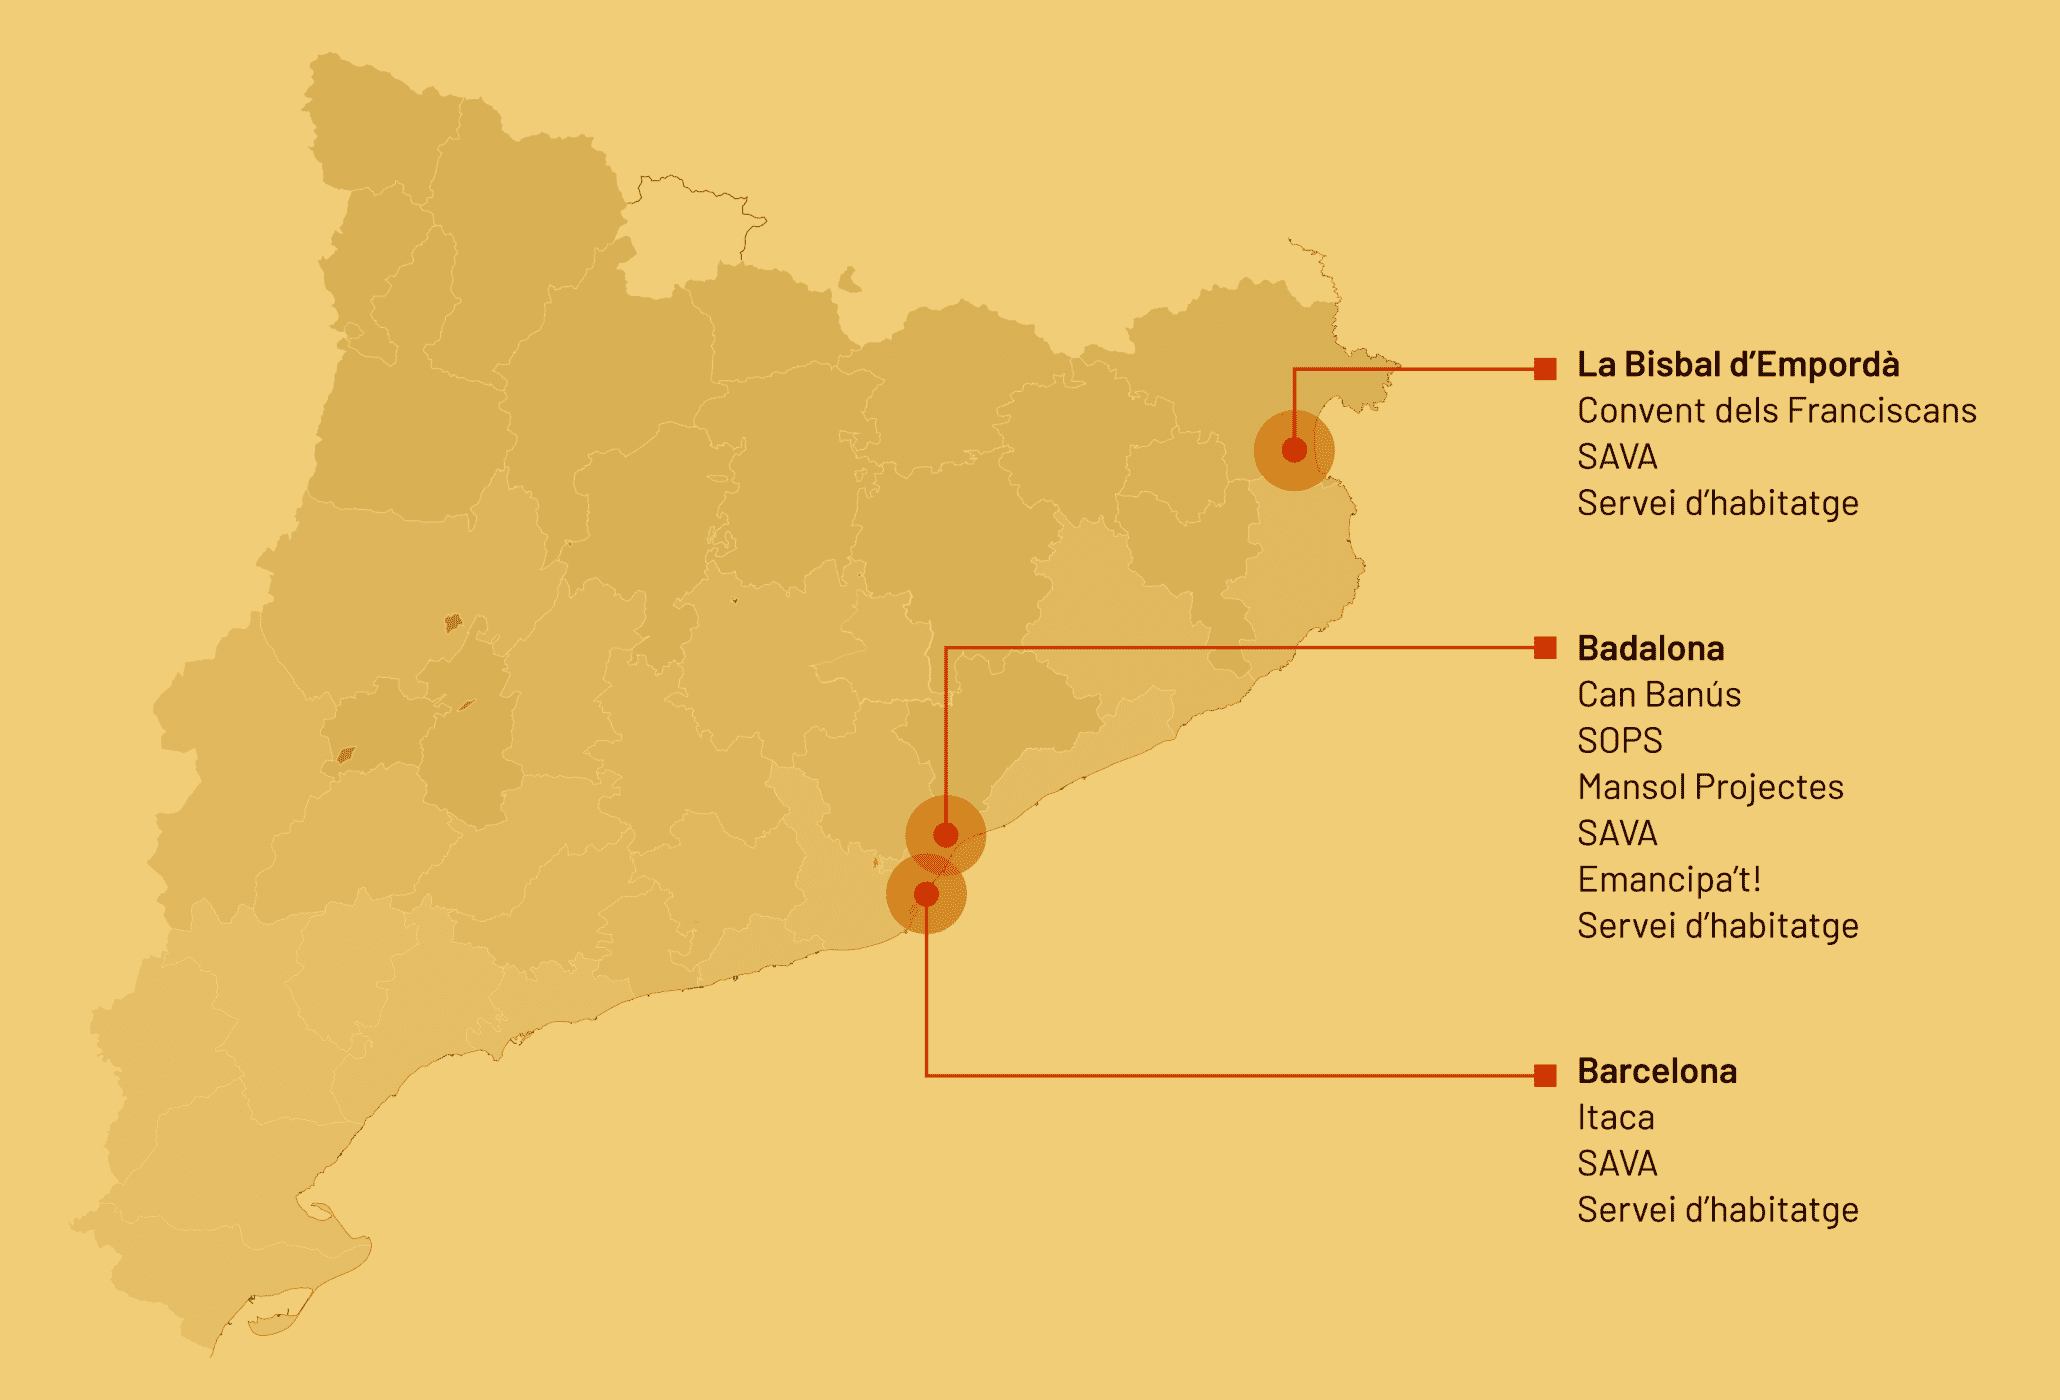 Mapa amb les zones on la Fundació duu a terme la seva acció social: Badalona, Barcelona i la Bisbal d'Empordà.